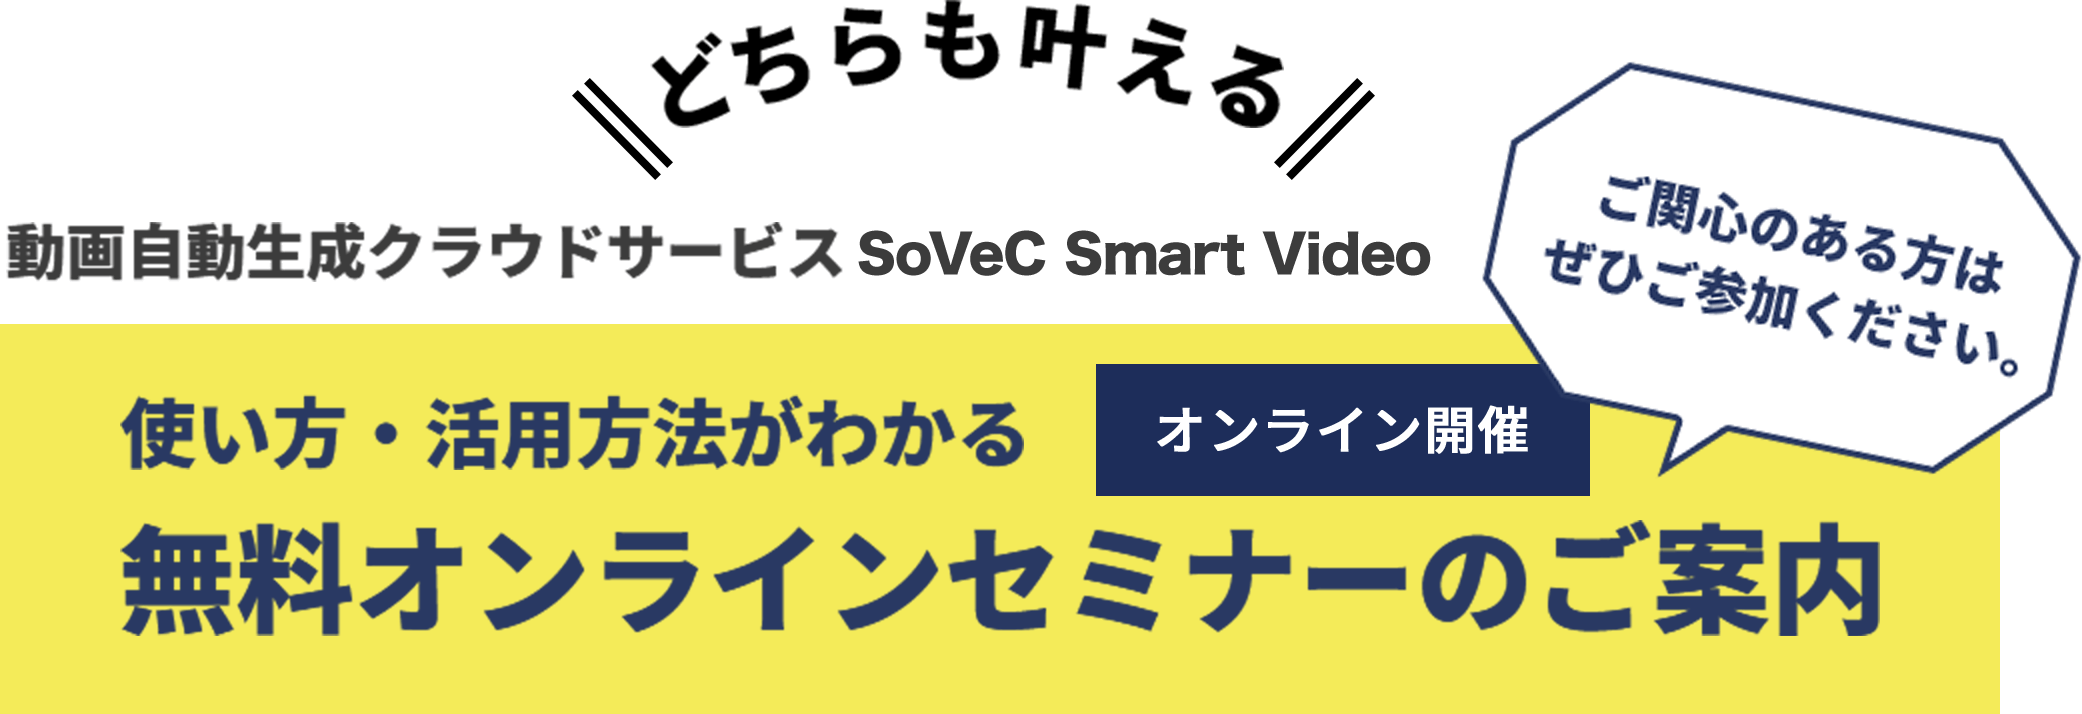 どちらも叶える 動画自動生成クラウドサービス SoVeC Smart Video 使い方・活用方法がわかるオンライン開催無料オンラインセミナーのご案内